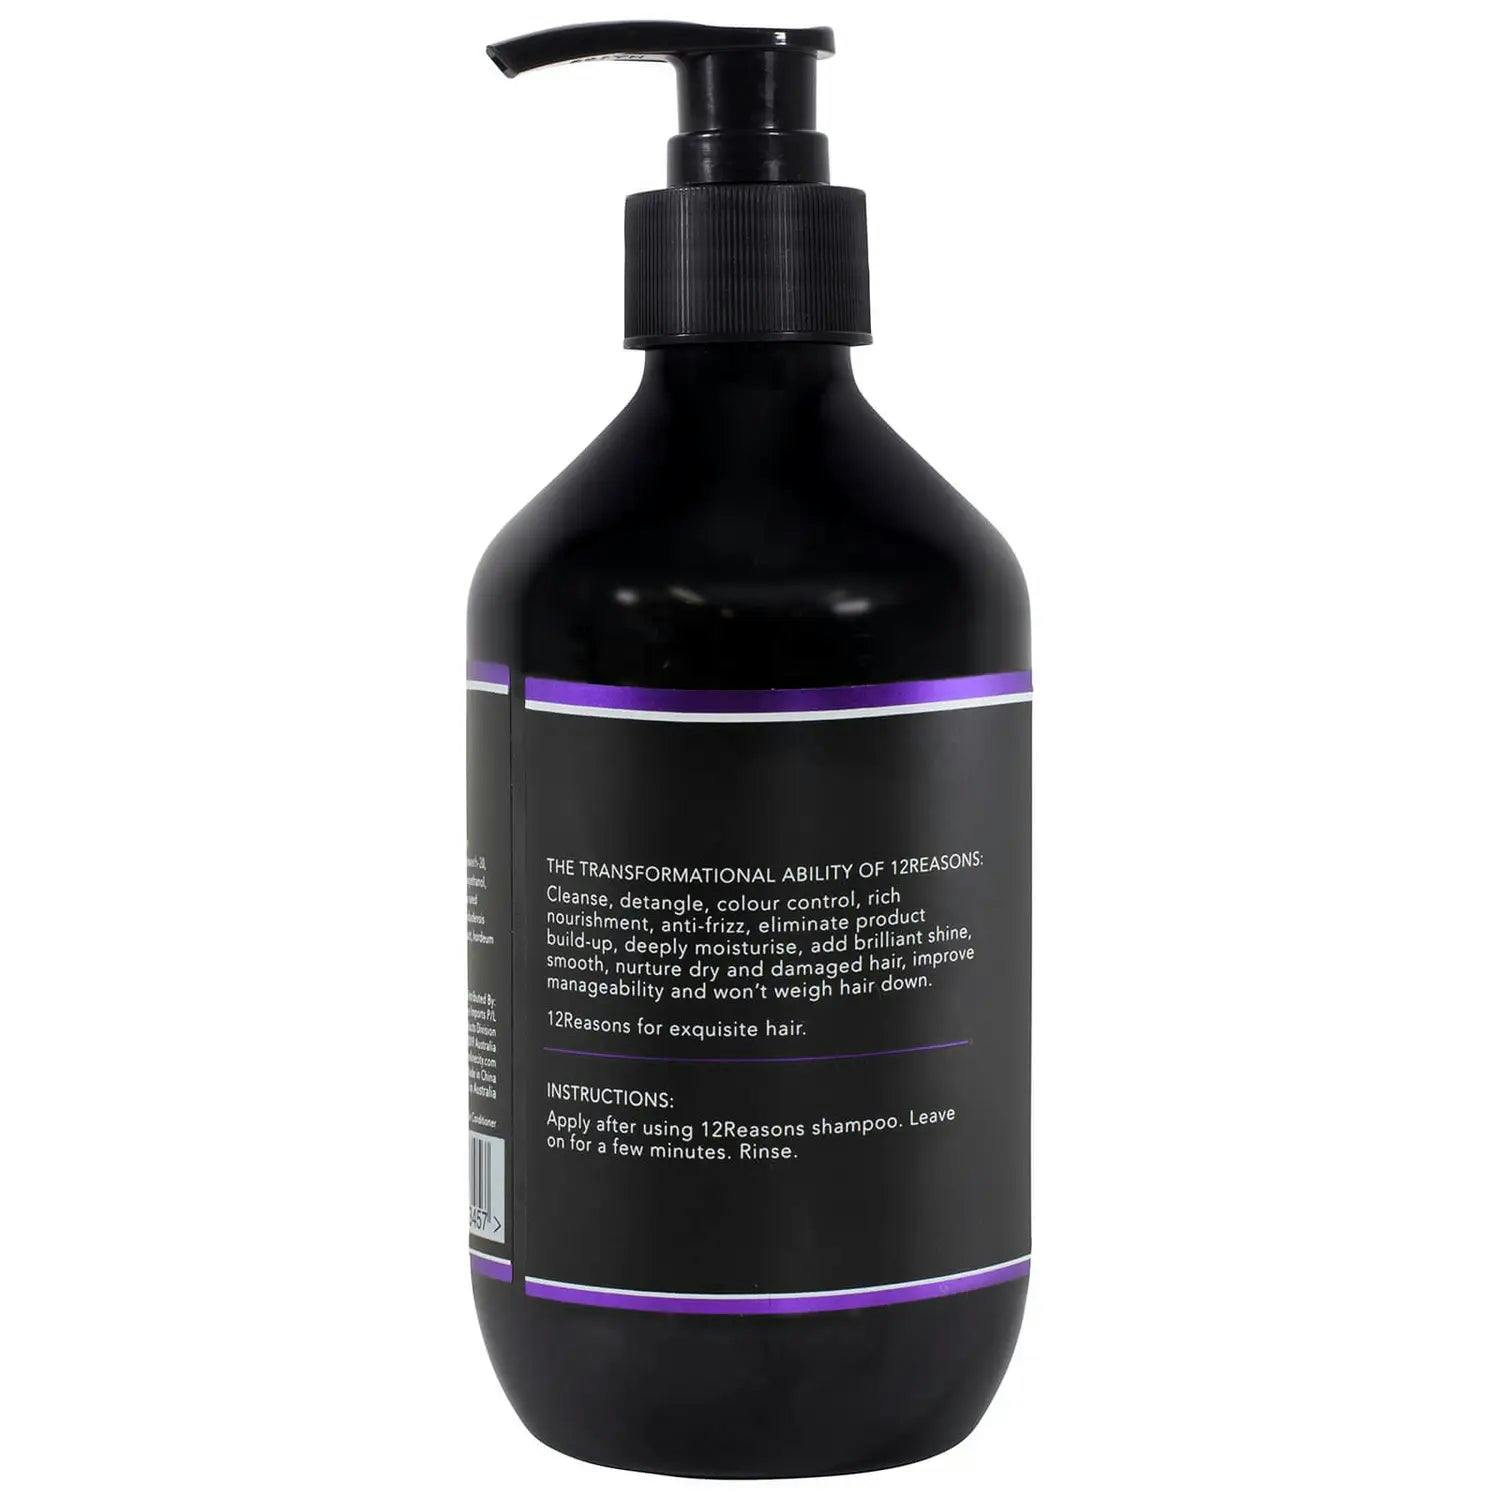 12Reasons Purple Shampoo 400ml